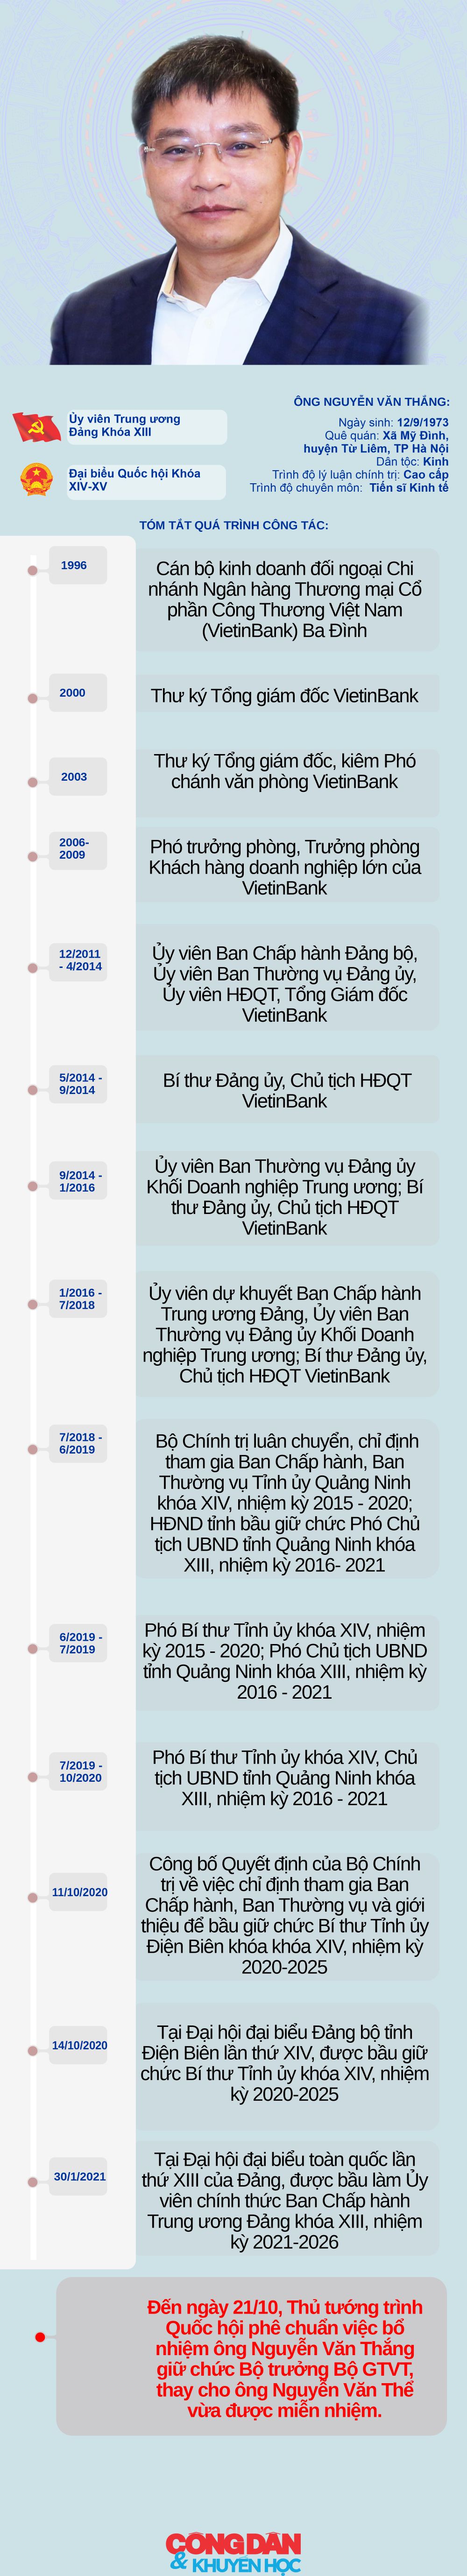 [Infographic] Ông Nguyễn Văn Thắng giữ chức Bộ trưởng Bộ Giao thông Vận tải (Thay bản cũ theo yêu cầu của TBT) - Ảnh 1.